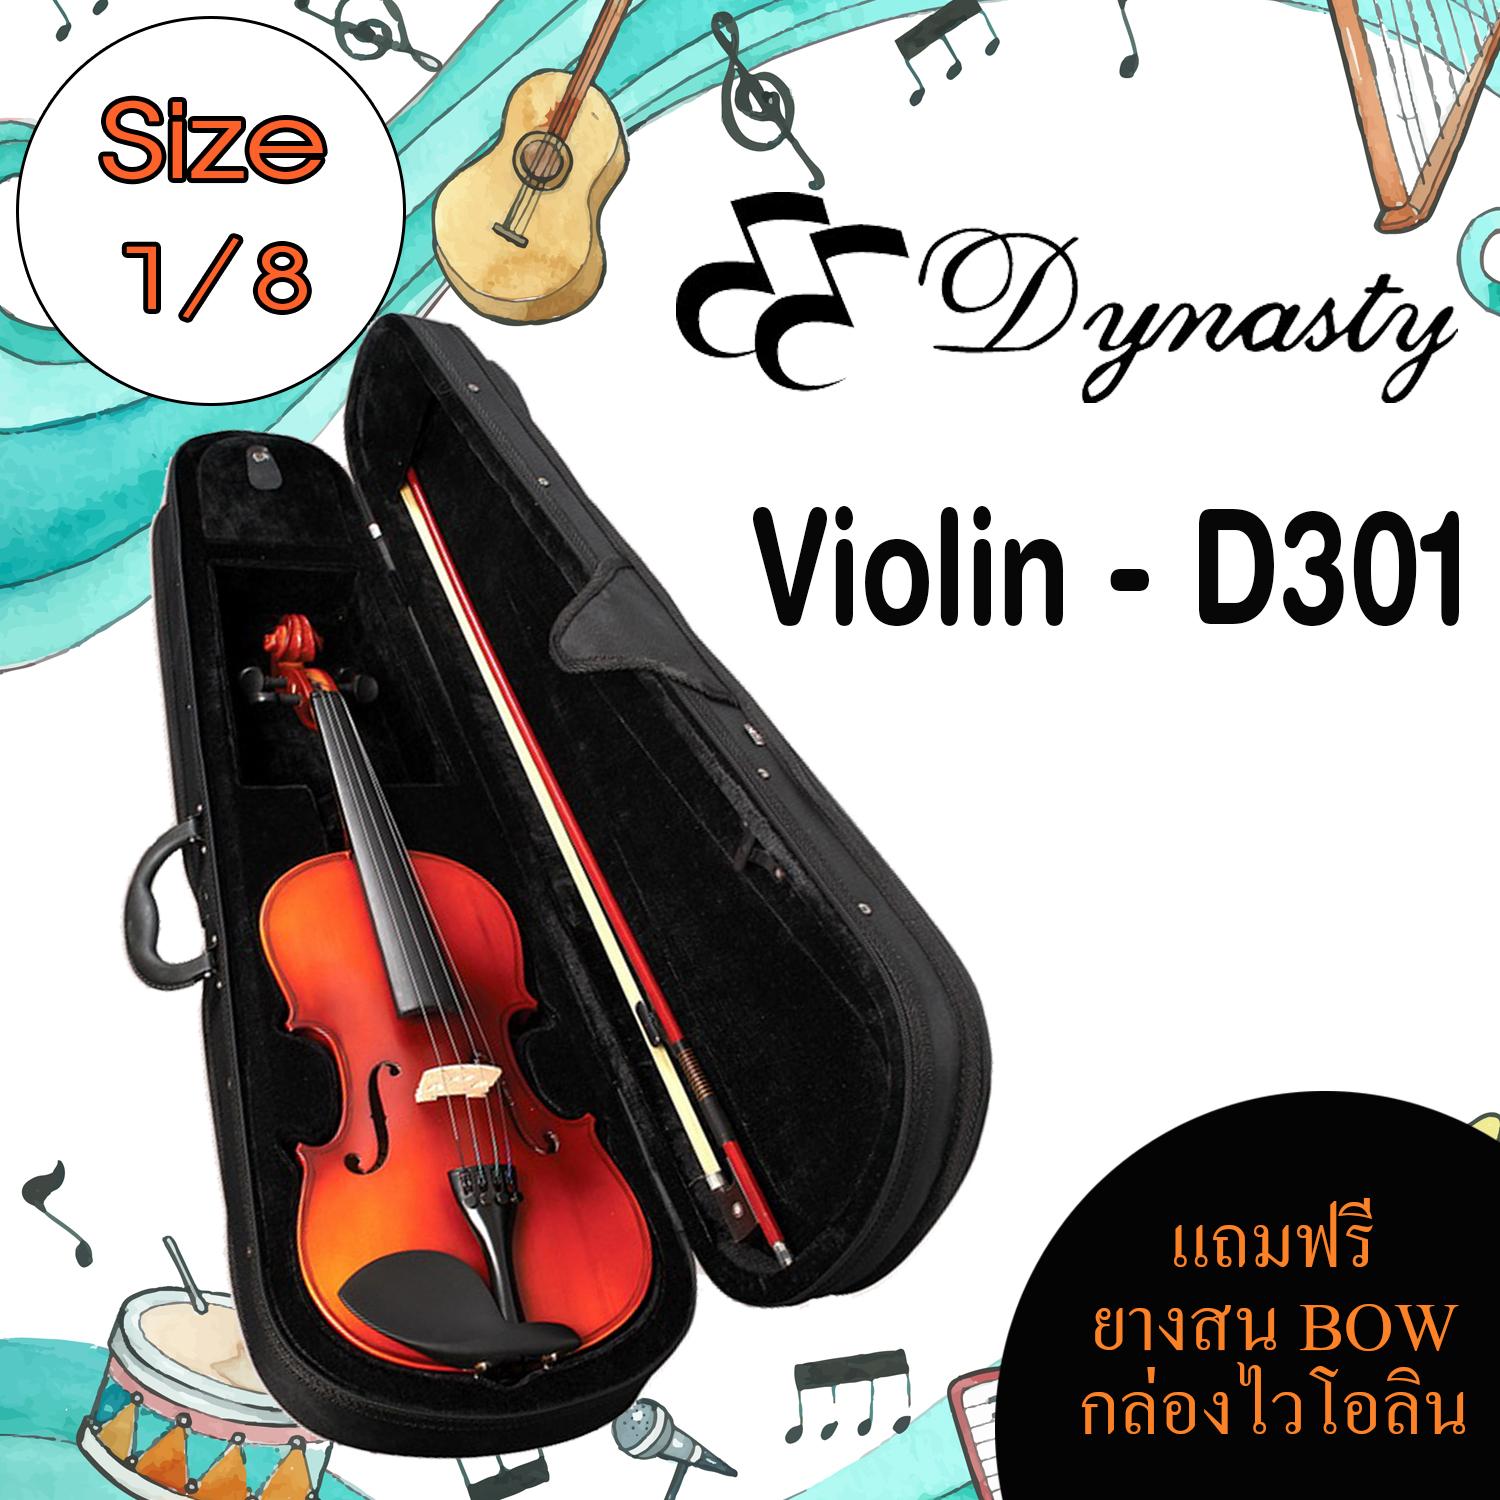 ไวโอลิน DYNASTY  Violin D301 1/8